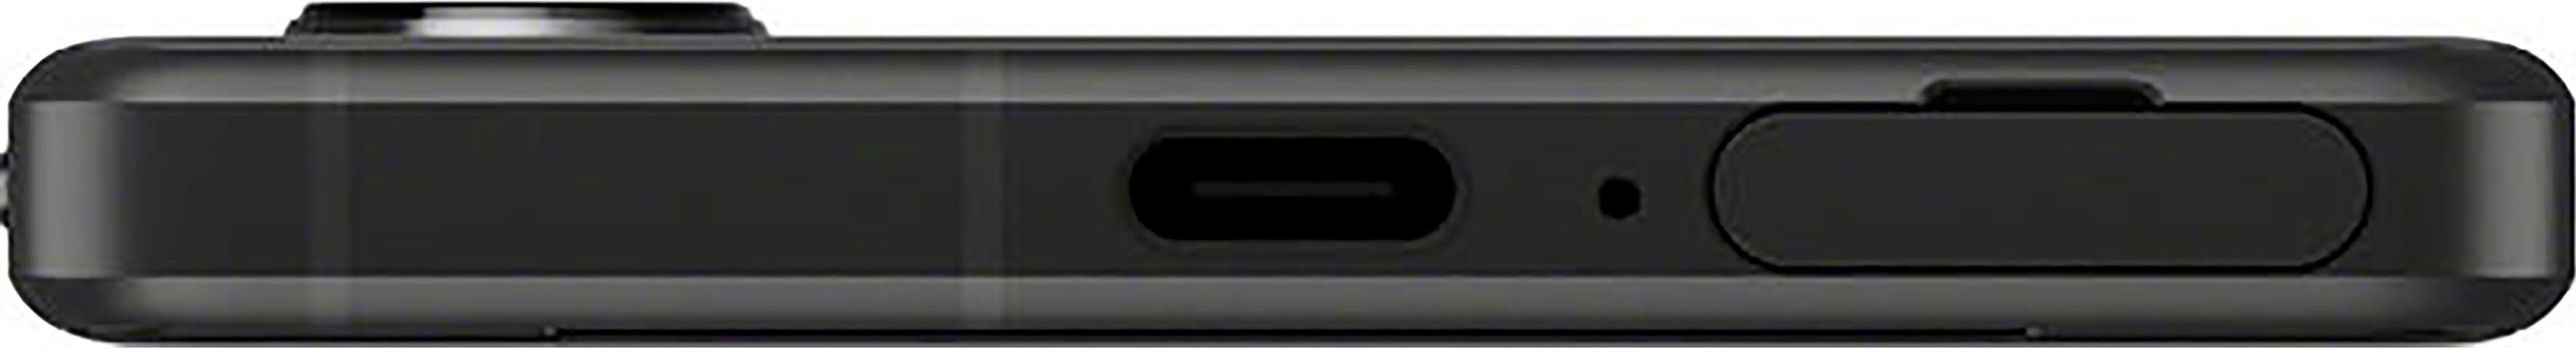 Sony Xperia 5 IV GB MP Kamera) Zoll, Smartphone Speicherplatz, schwarz 128 cm/6,1 12 (15,49